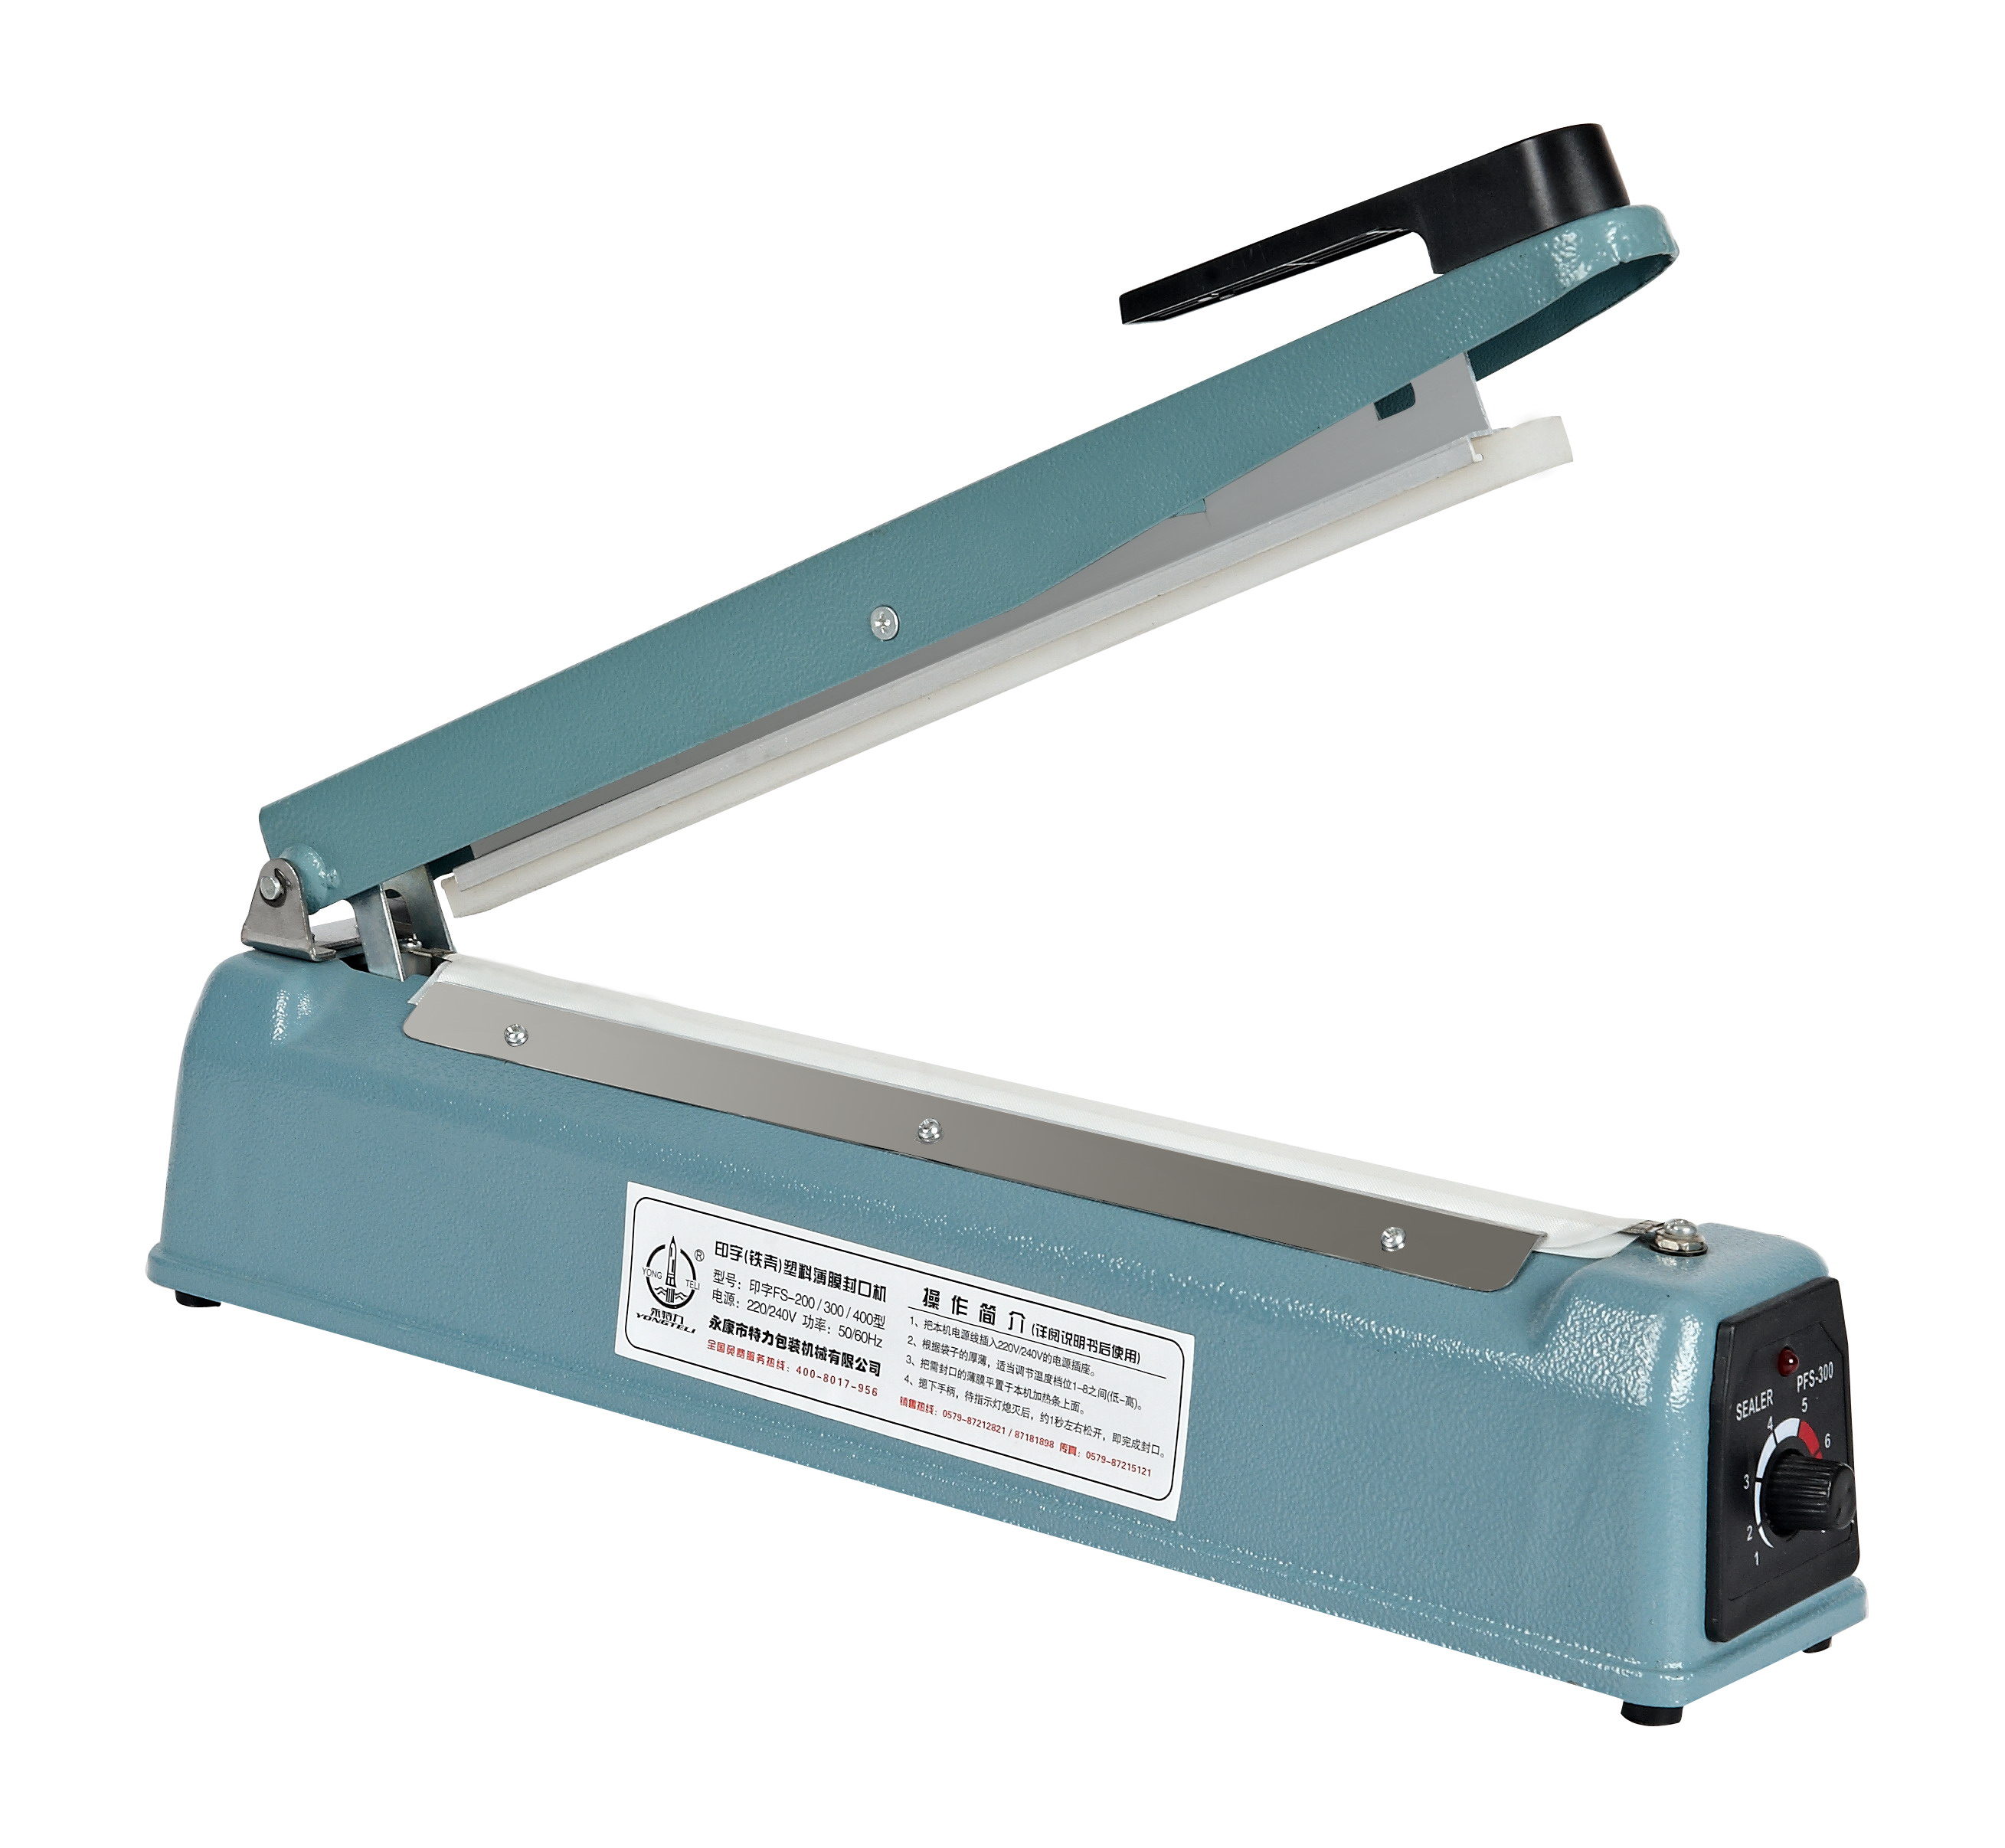 <b>Impulse Sealer Manual Plastic Bag Heat Seal Machine FS-400</b>